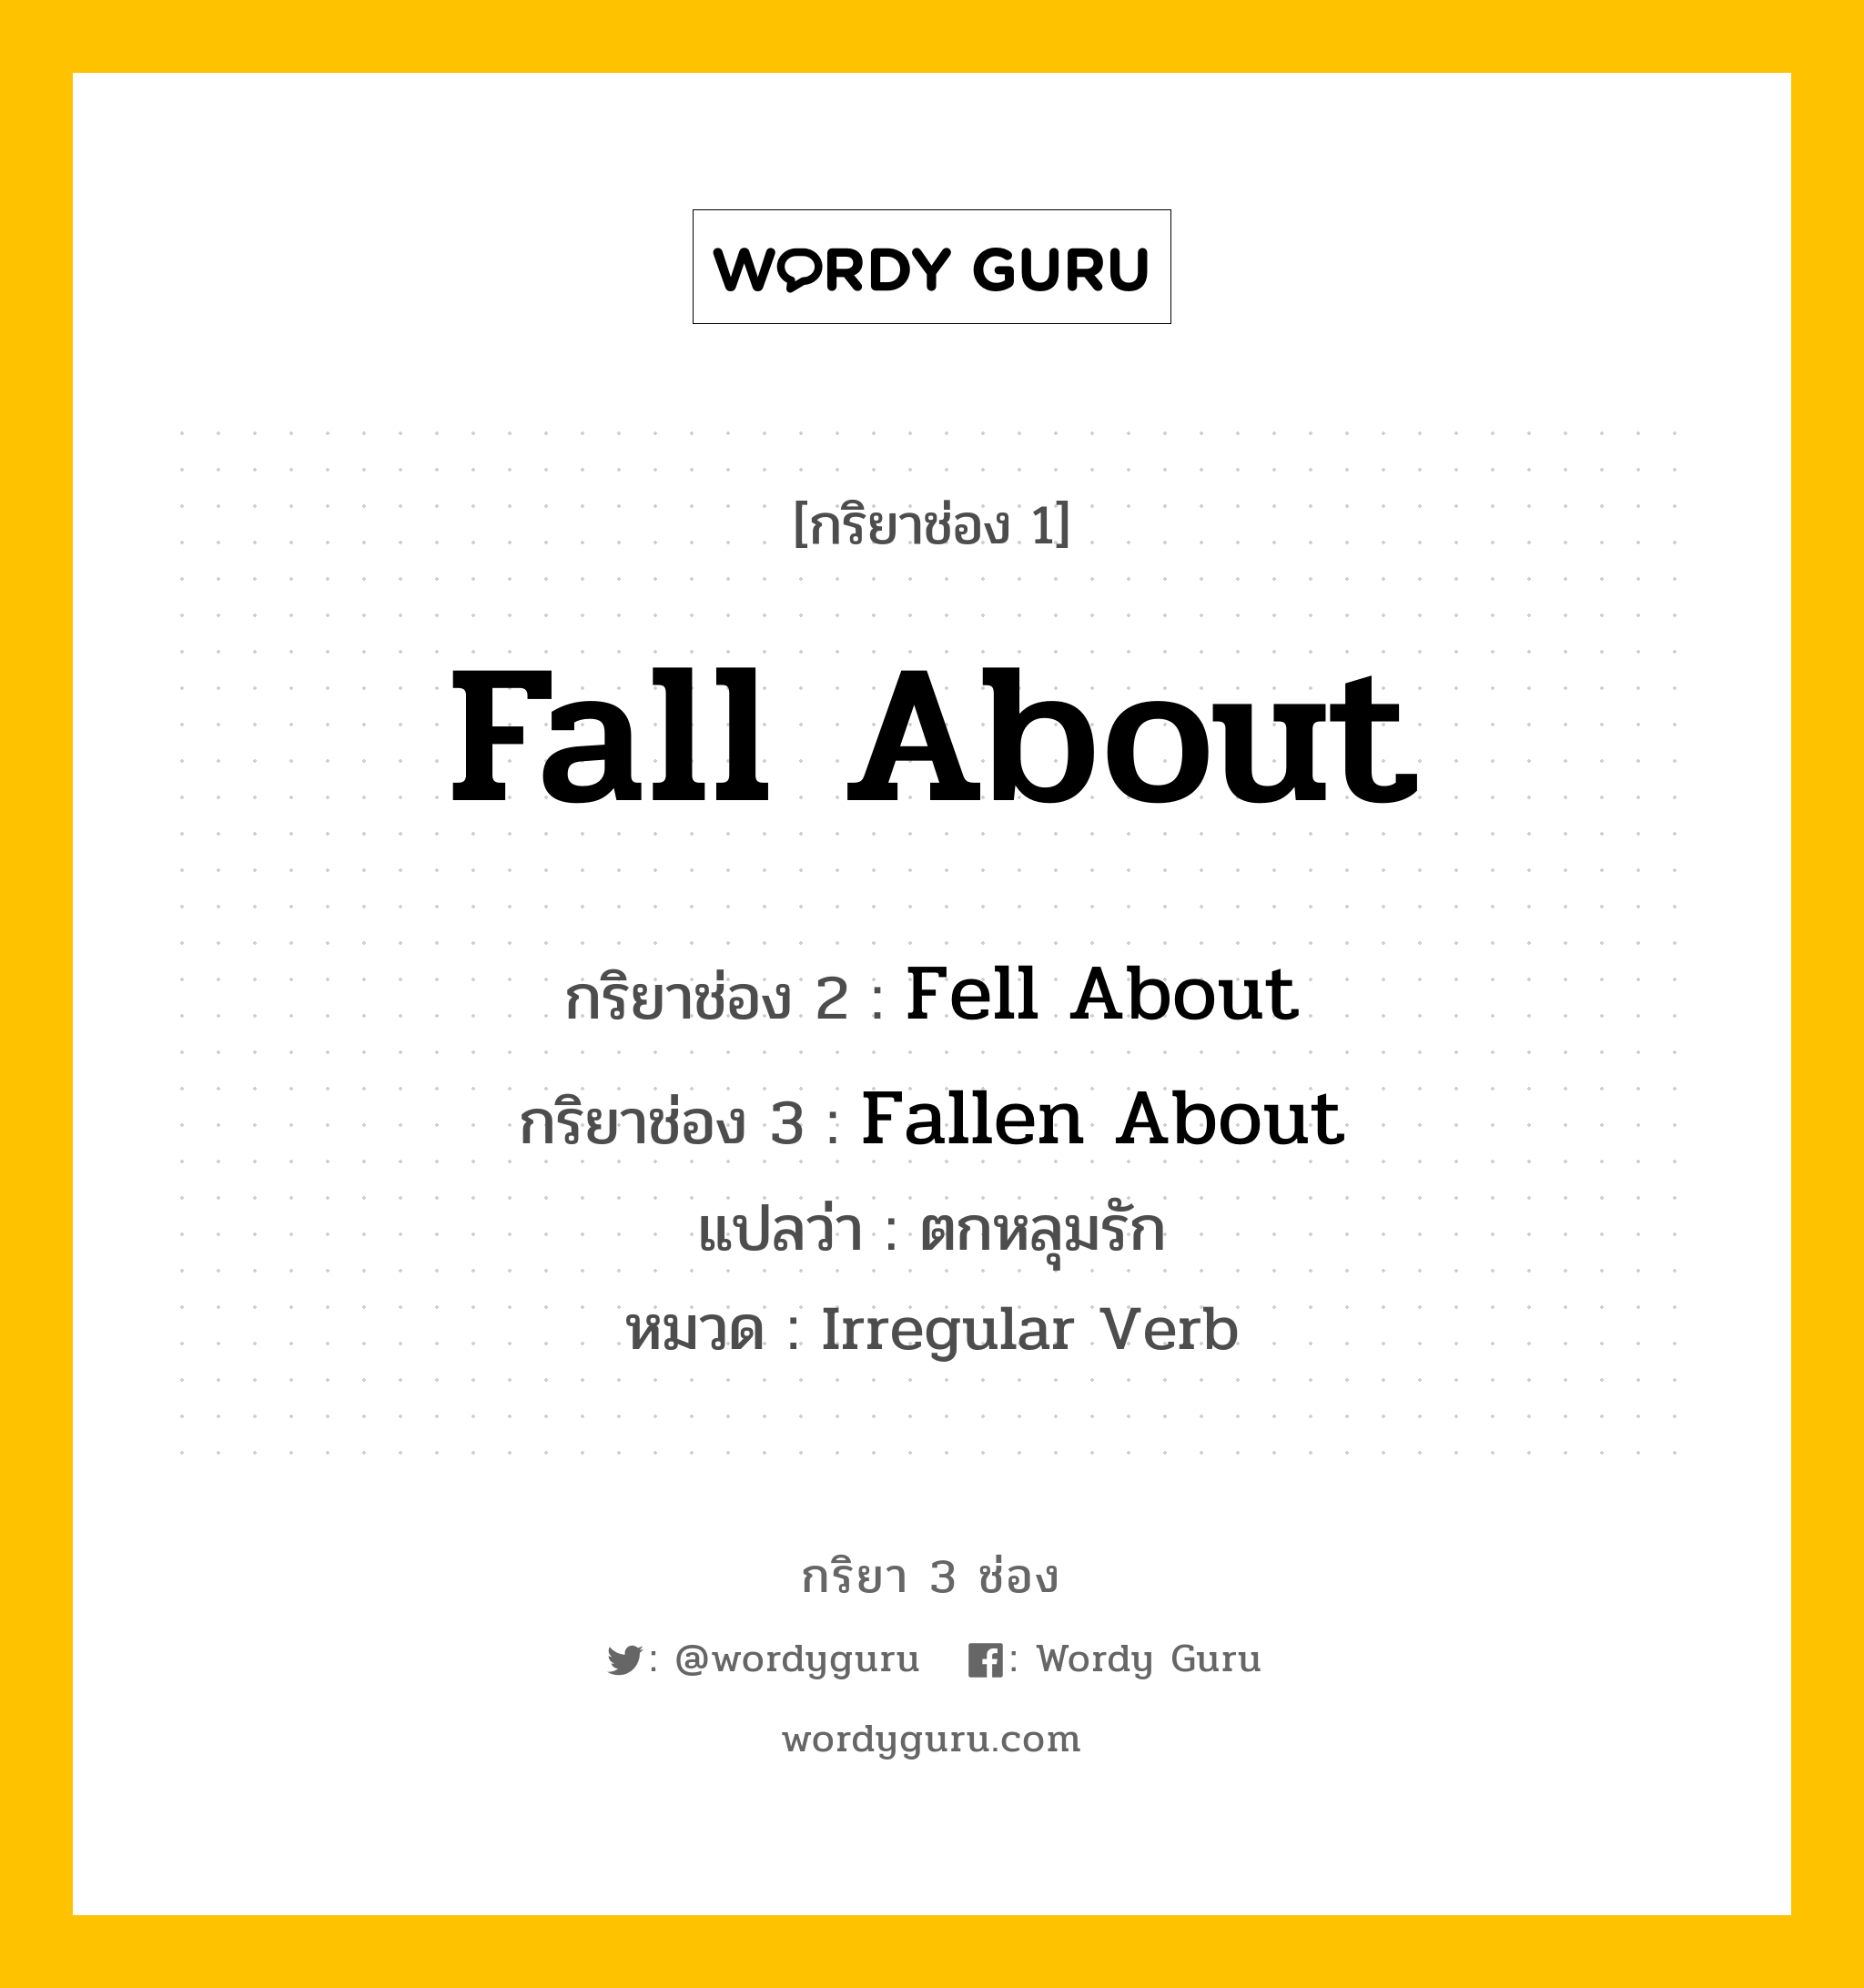 กริยา 3 ช่อง: Fall About ช่อง 2 Fall About ช่อง 3 คืออะไร, กริยาช่อง 1 Fall About กริยาช่อง 2 Fell About กริยาช่อง 3 Fallen About แปลว่า ตกหลุมรัก หมวด Irregular Verb หมวด Irregular Verb